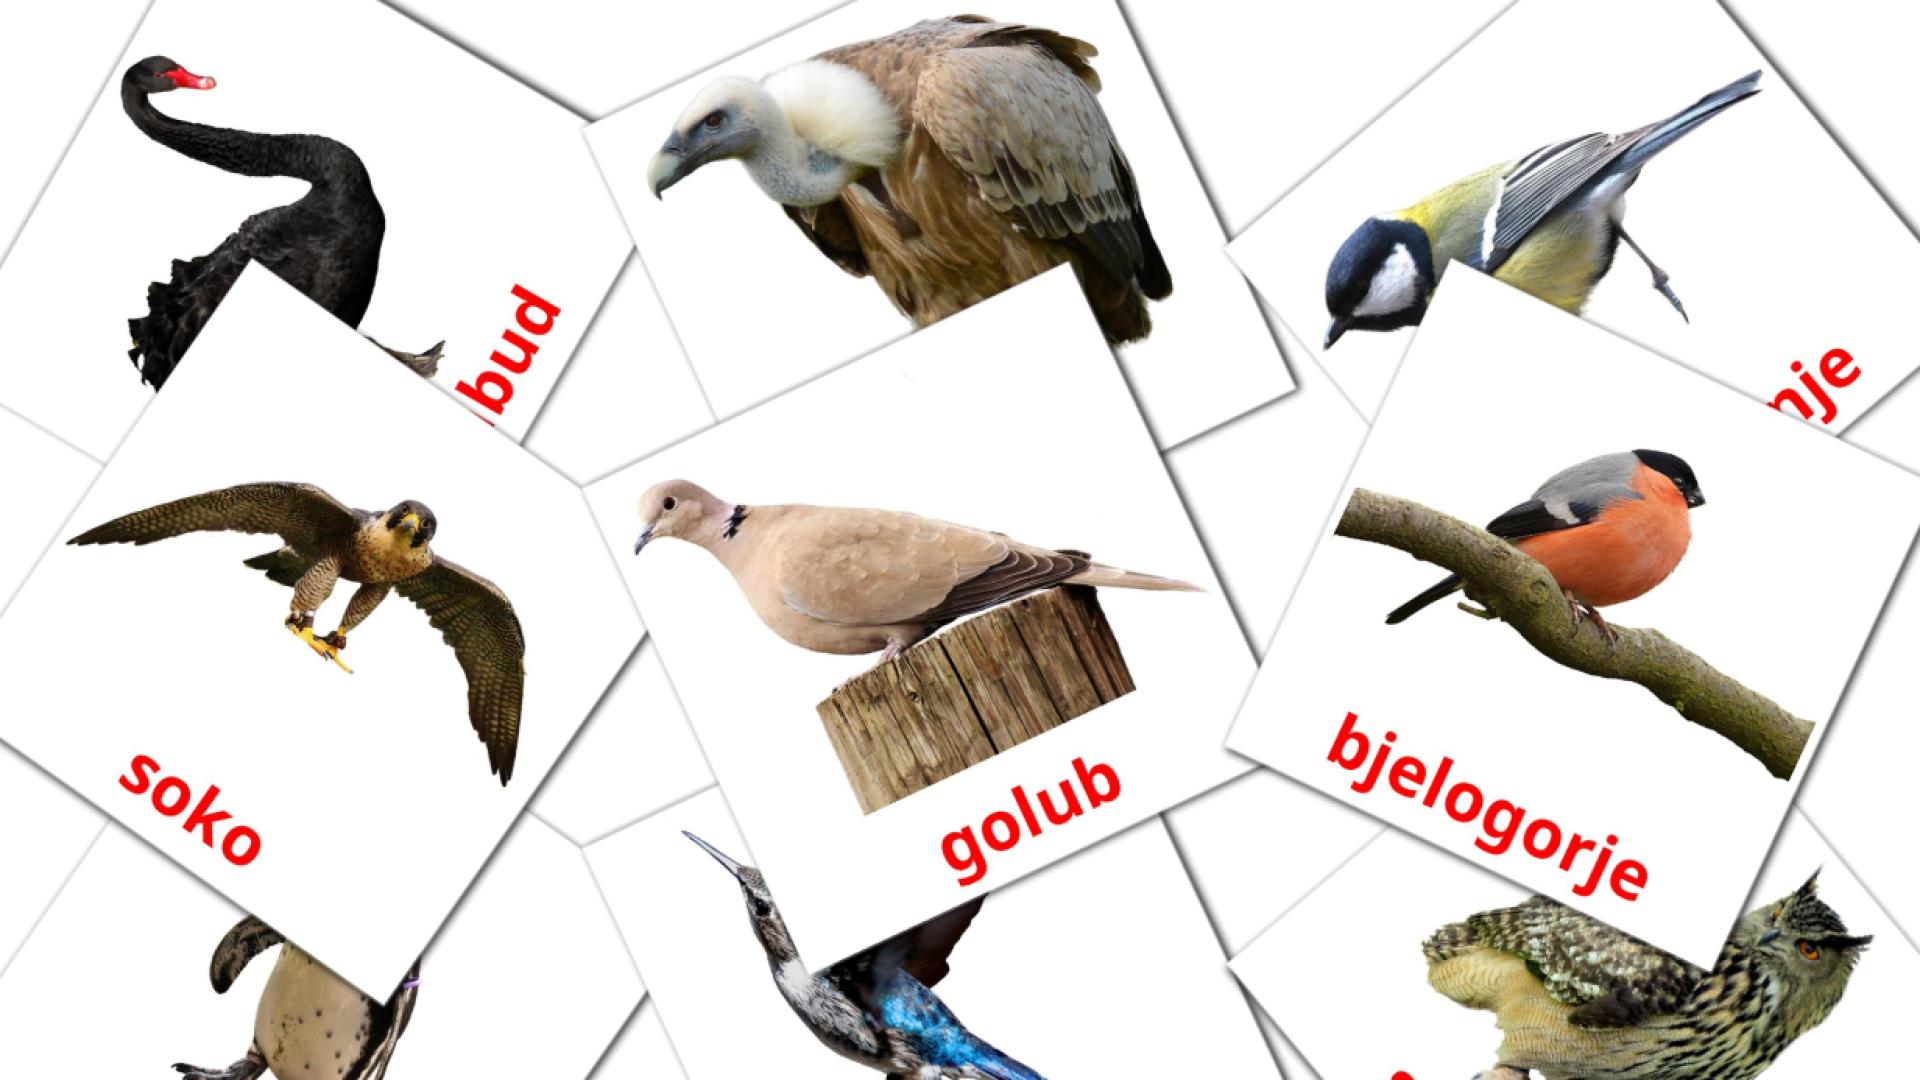 18 Imagiers divlje ptice